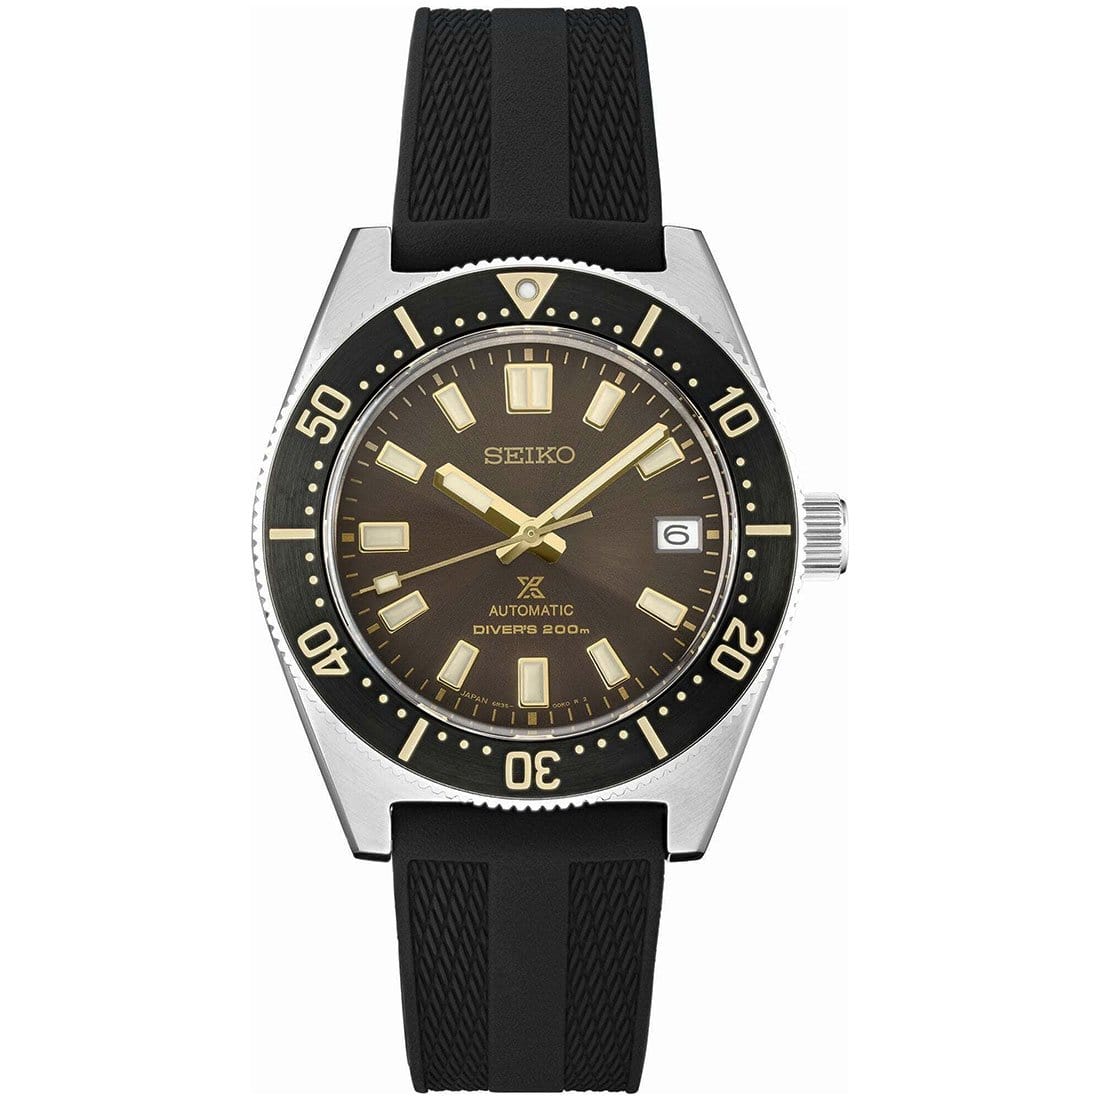 SPB147J1 SPB147J SPB147 Seiko Prospex Sea Automatic 24 Jewels Divers 200m Watch